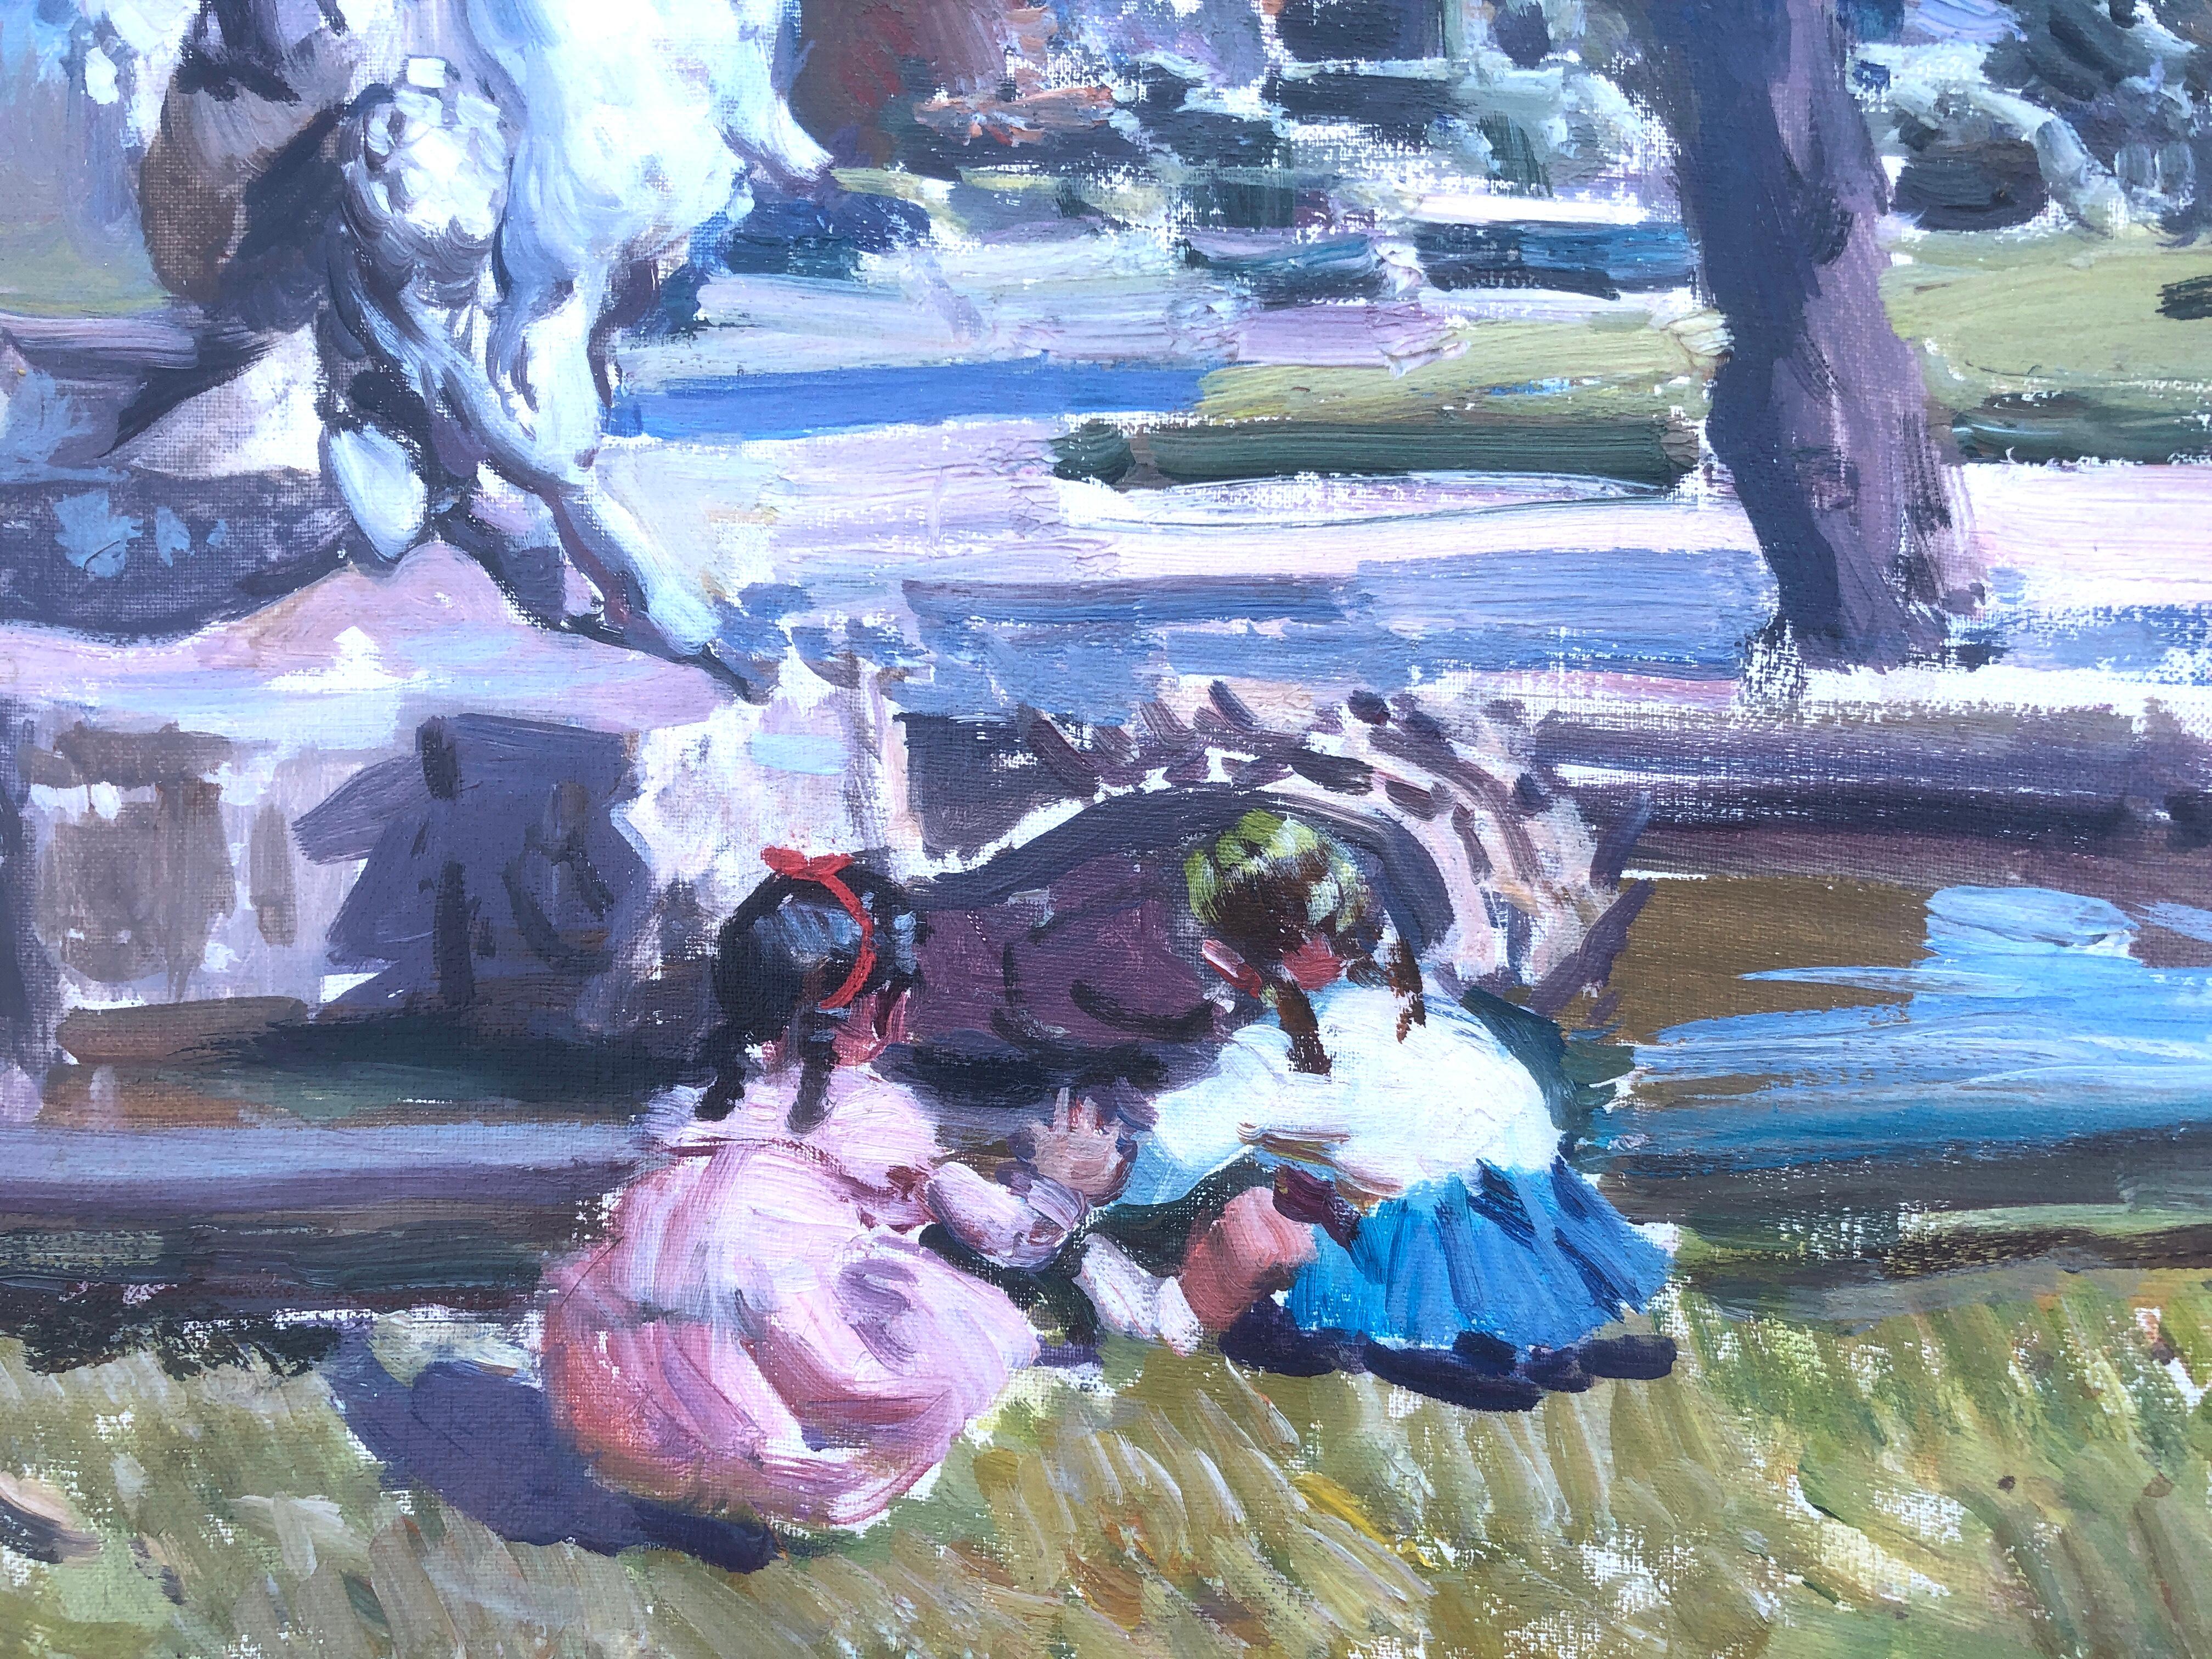 Les enfants jouant dans le parc de Barcelone, Espagne, peinture à l'huile sur toile - Post-impressionnisme Painting par Ignacio Gil Sala